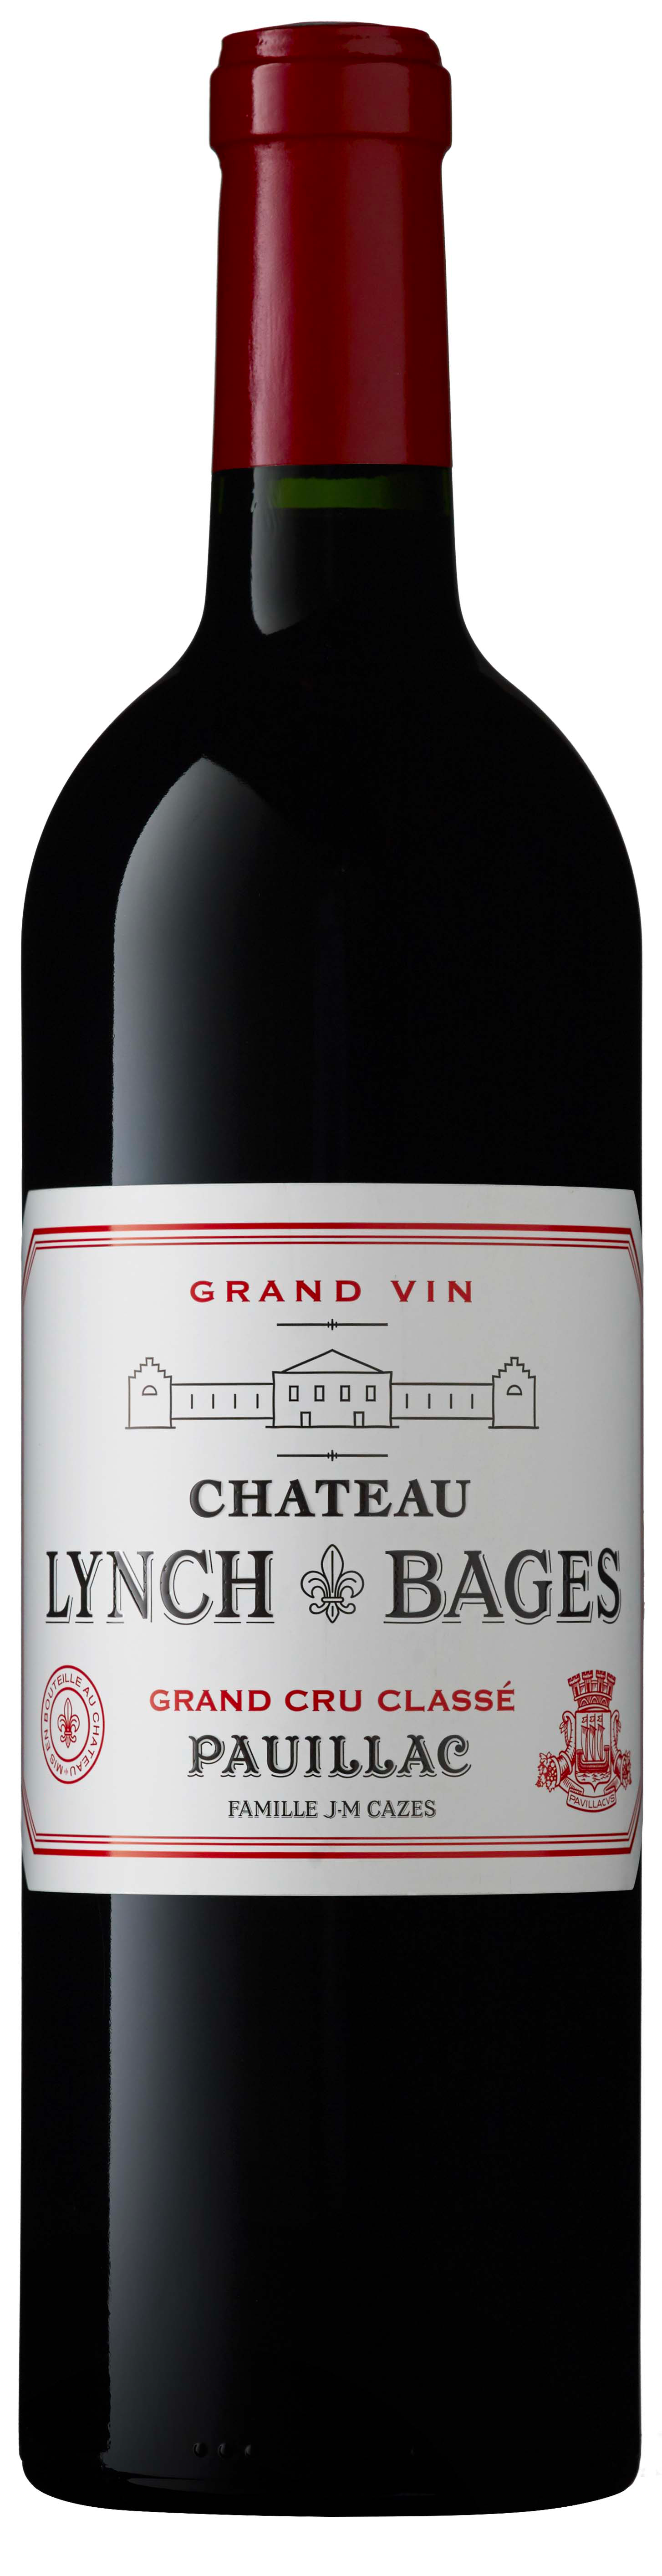 Lynch bages 2018 5 me Grand cru class Pauillac, Bordeaux rouge